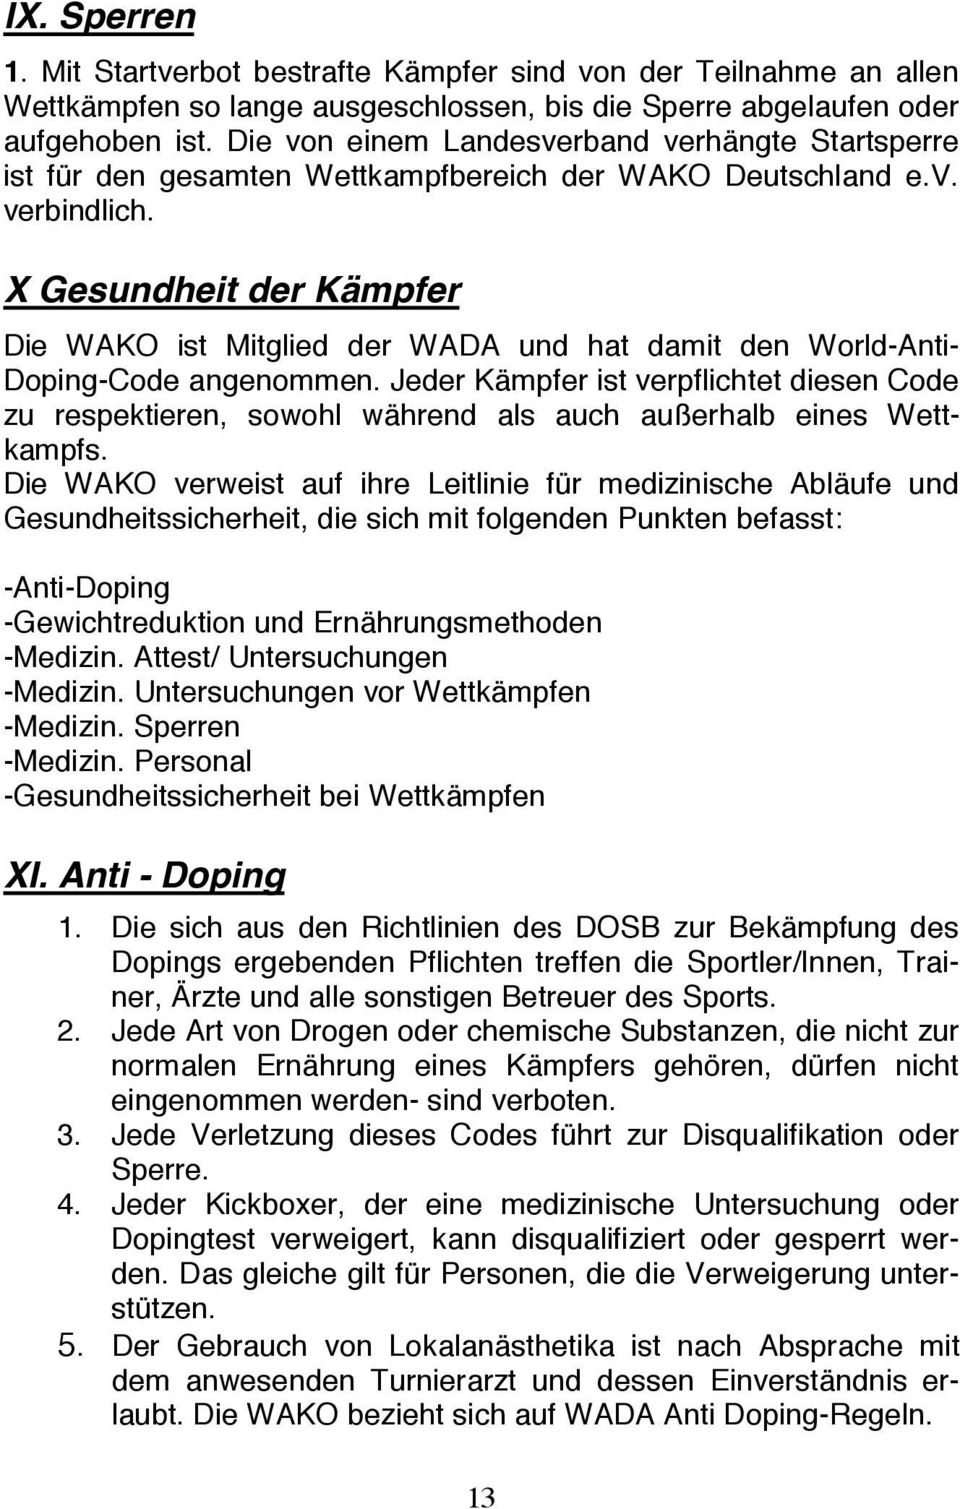 X Gesundheit der Kämpfer Die WAKO ist Mitglied der WADA und hat damit den World-Anti- Doping-Code angenommen.